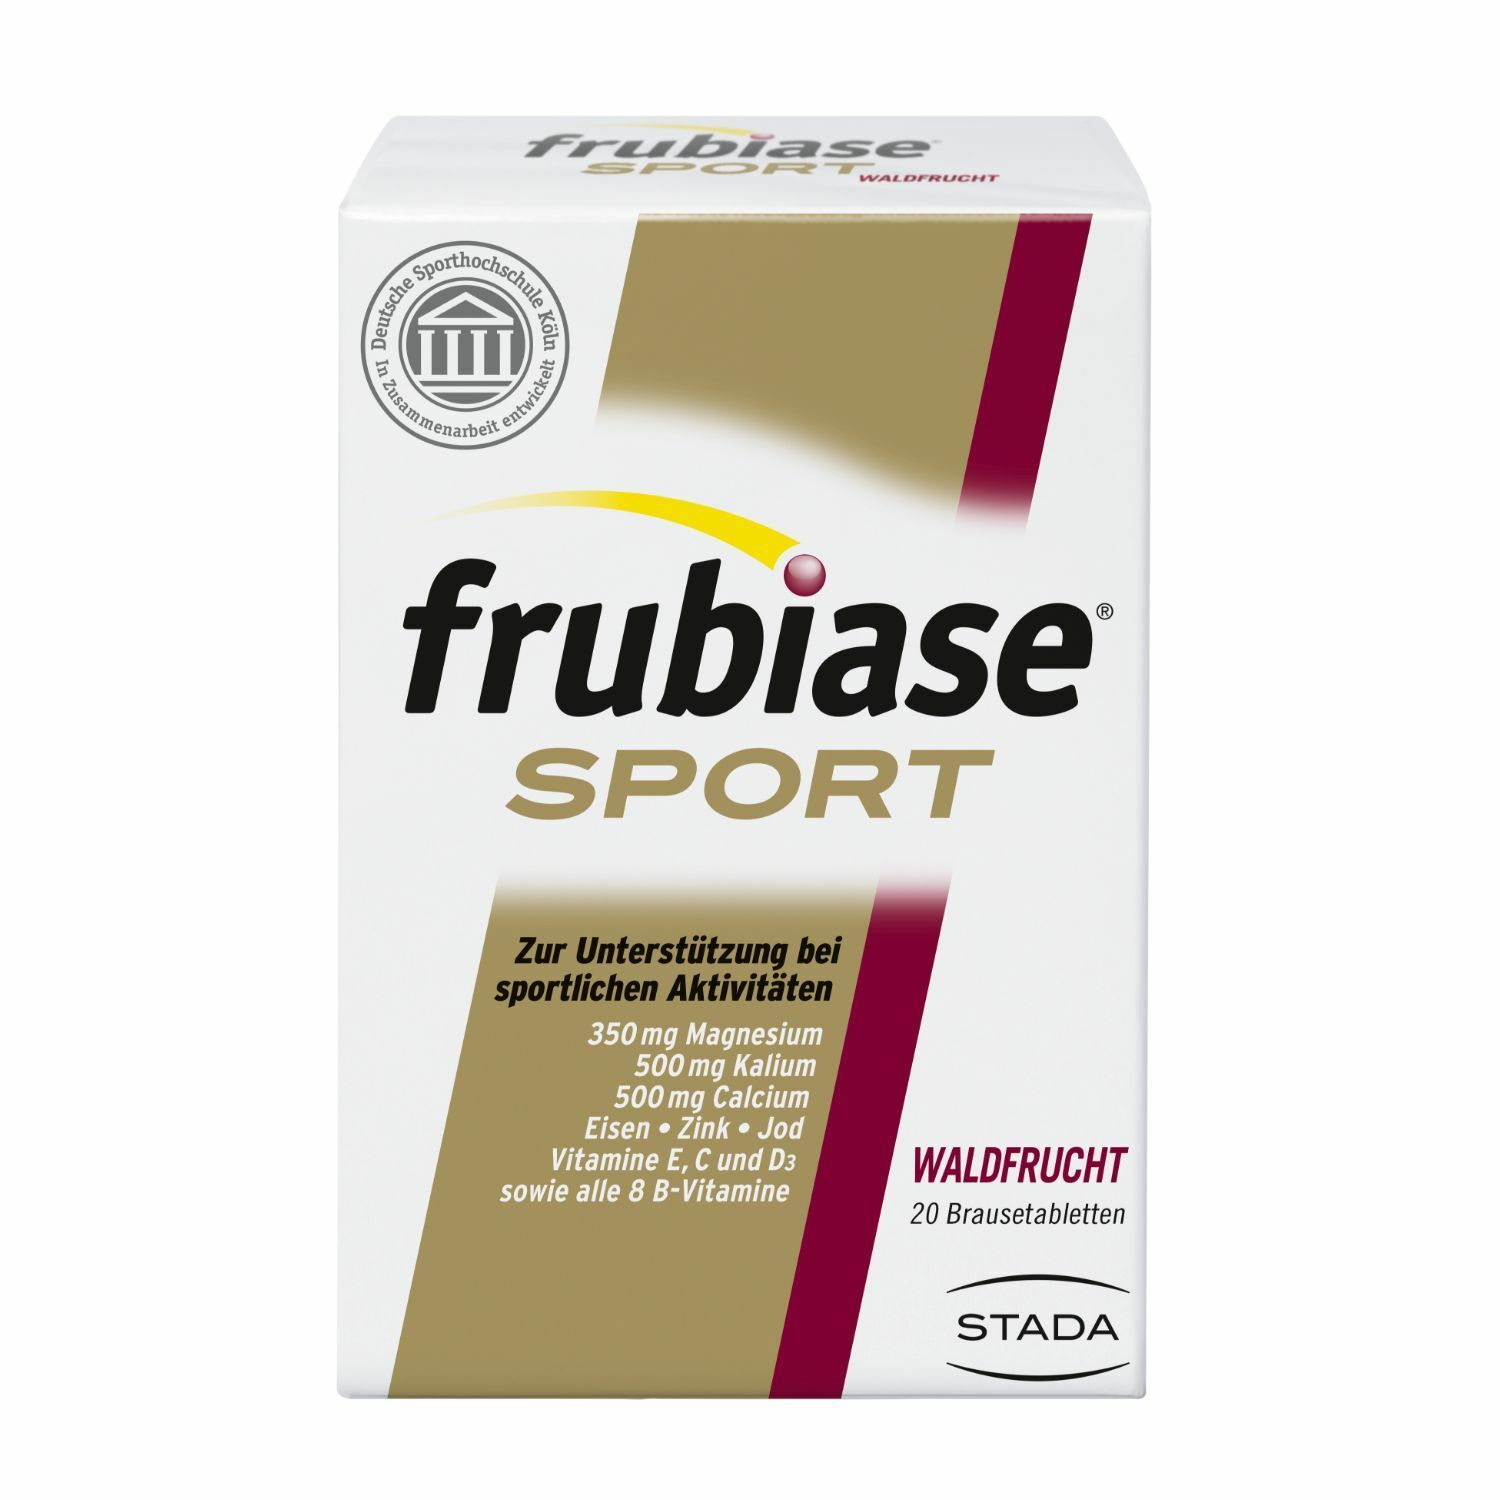 frubiase® SPORT - Mit hochdosierten Mineralstoffen, Vitaminen und Spurenelementen